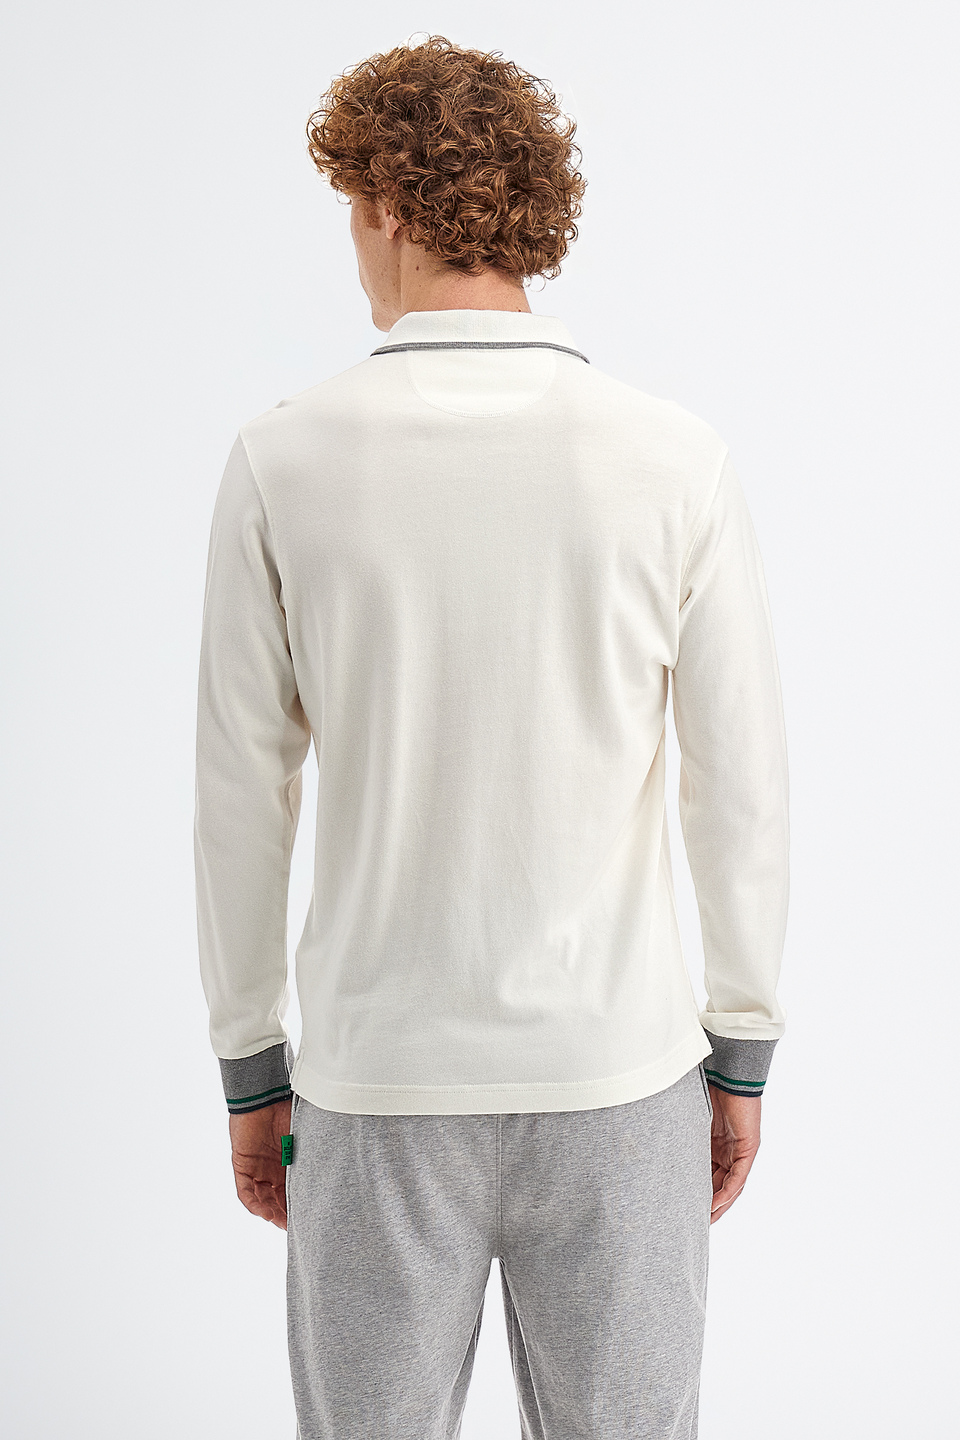 Polo da uomo in cotone jersey maniche lunghe slim fit | La Martina - Official Online Shop